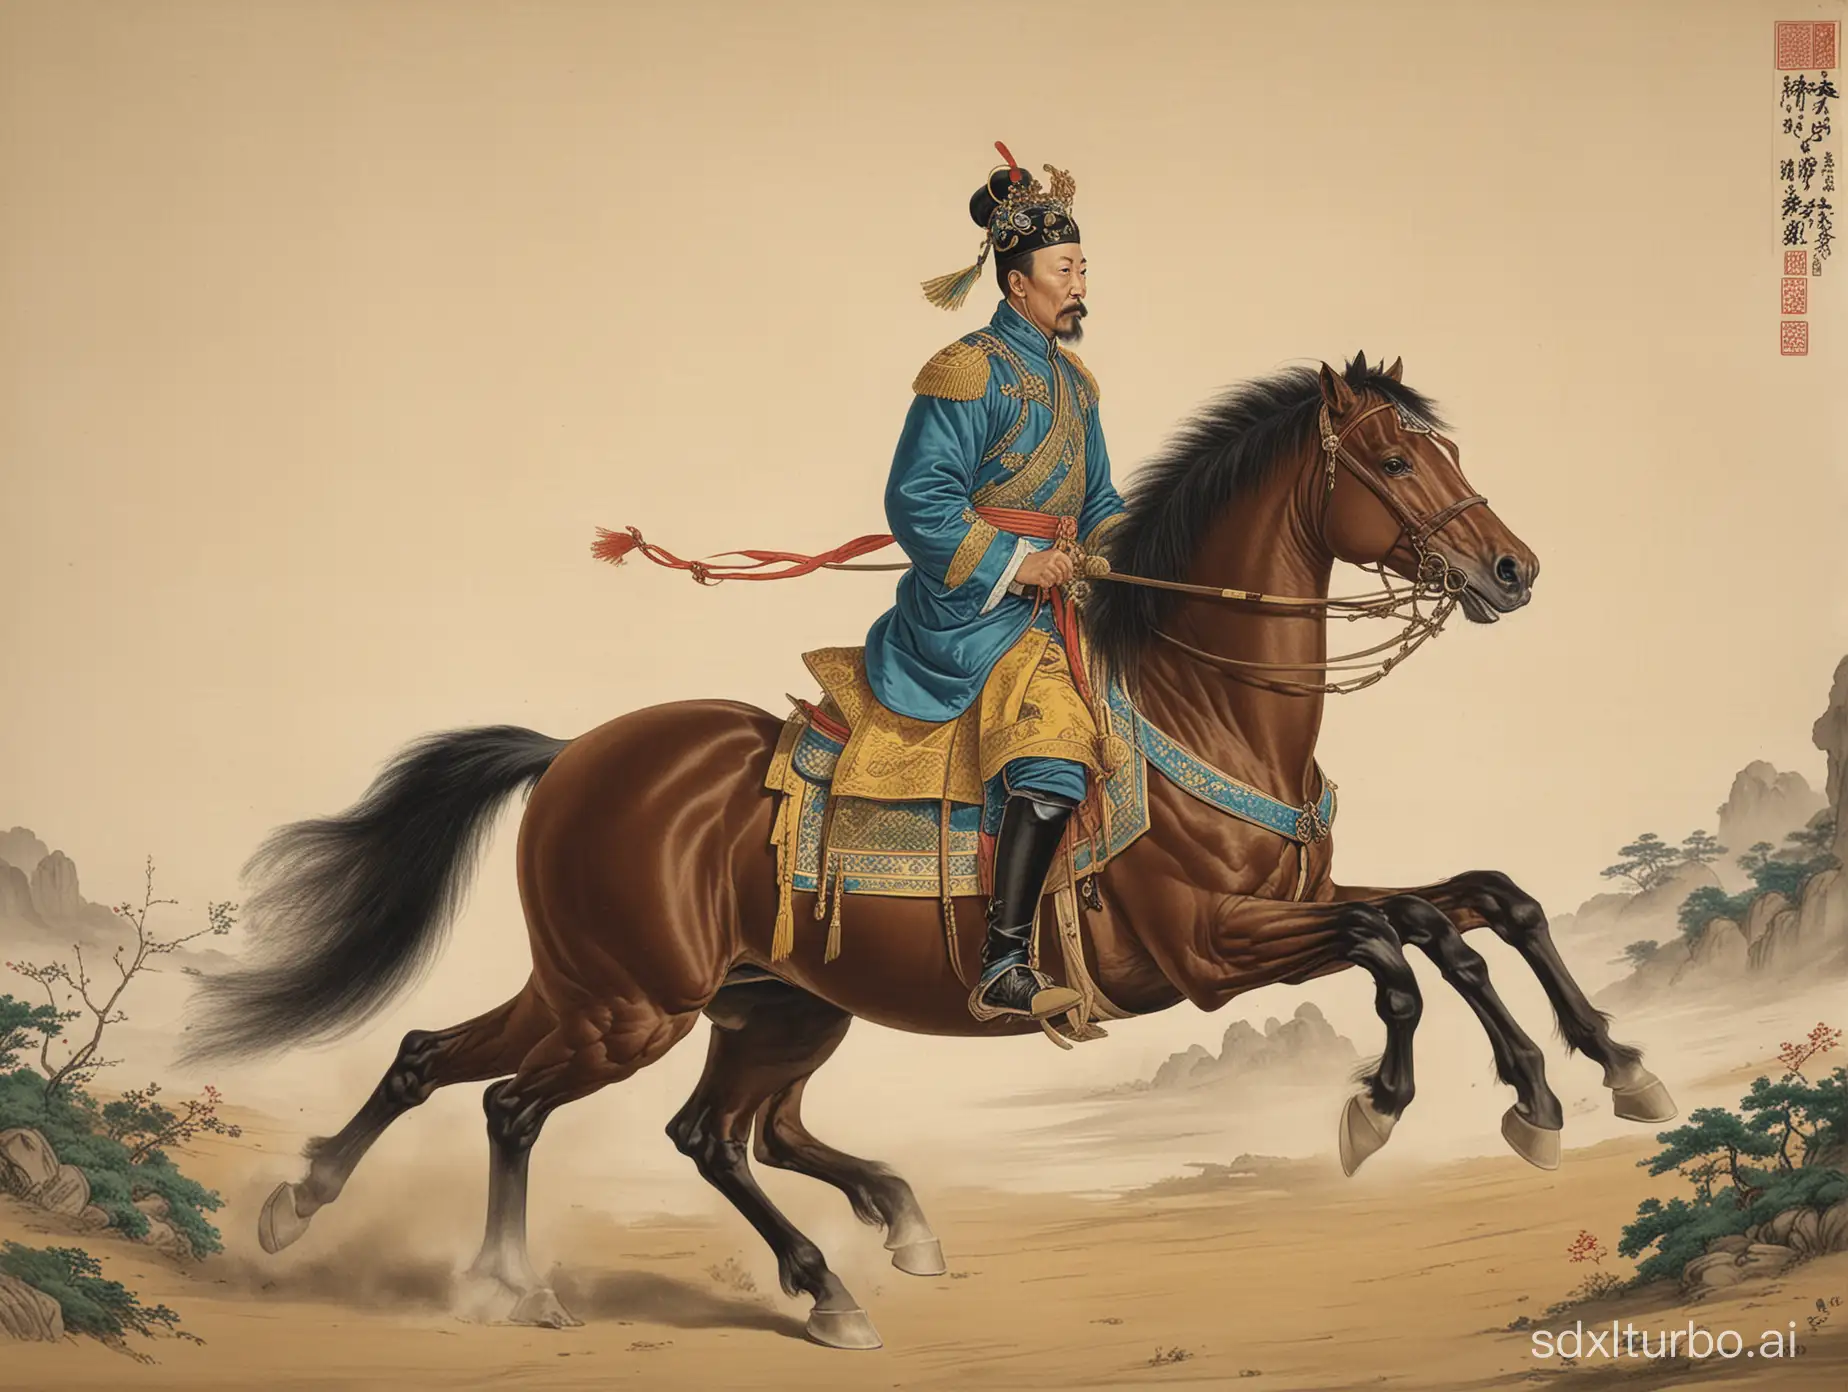 一位清朝的将军骑在马上